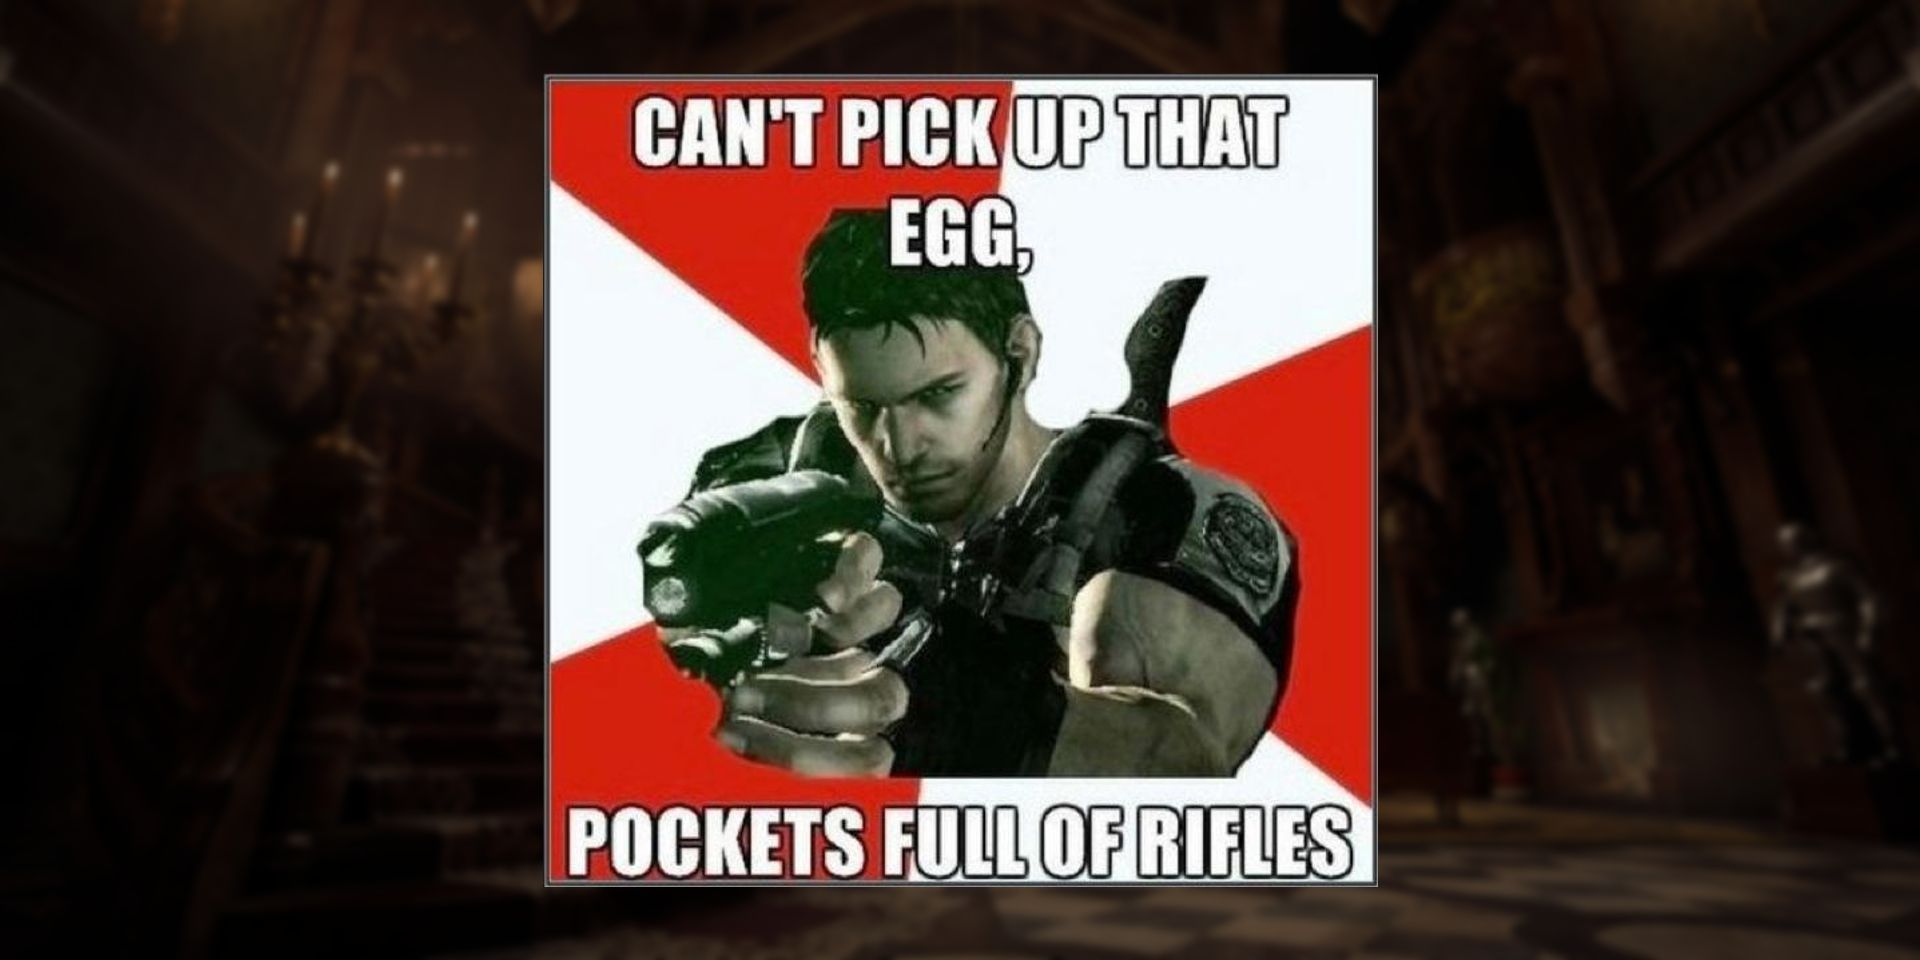 Resident Evil 5 egg meme.